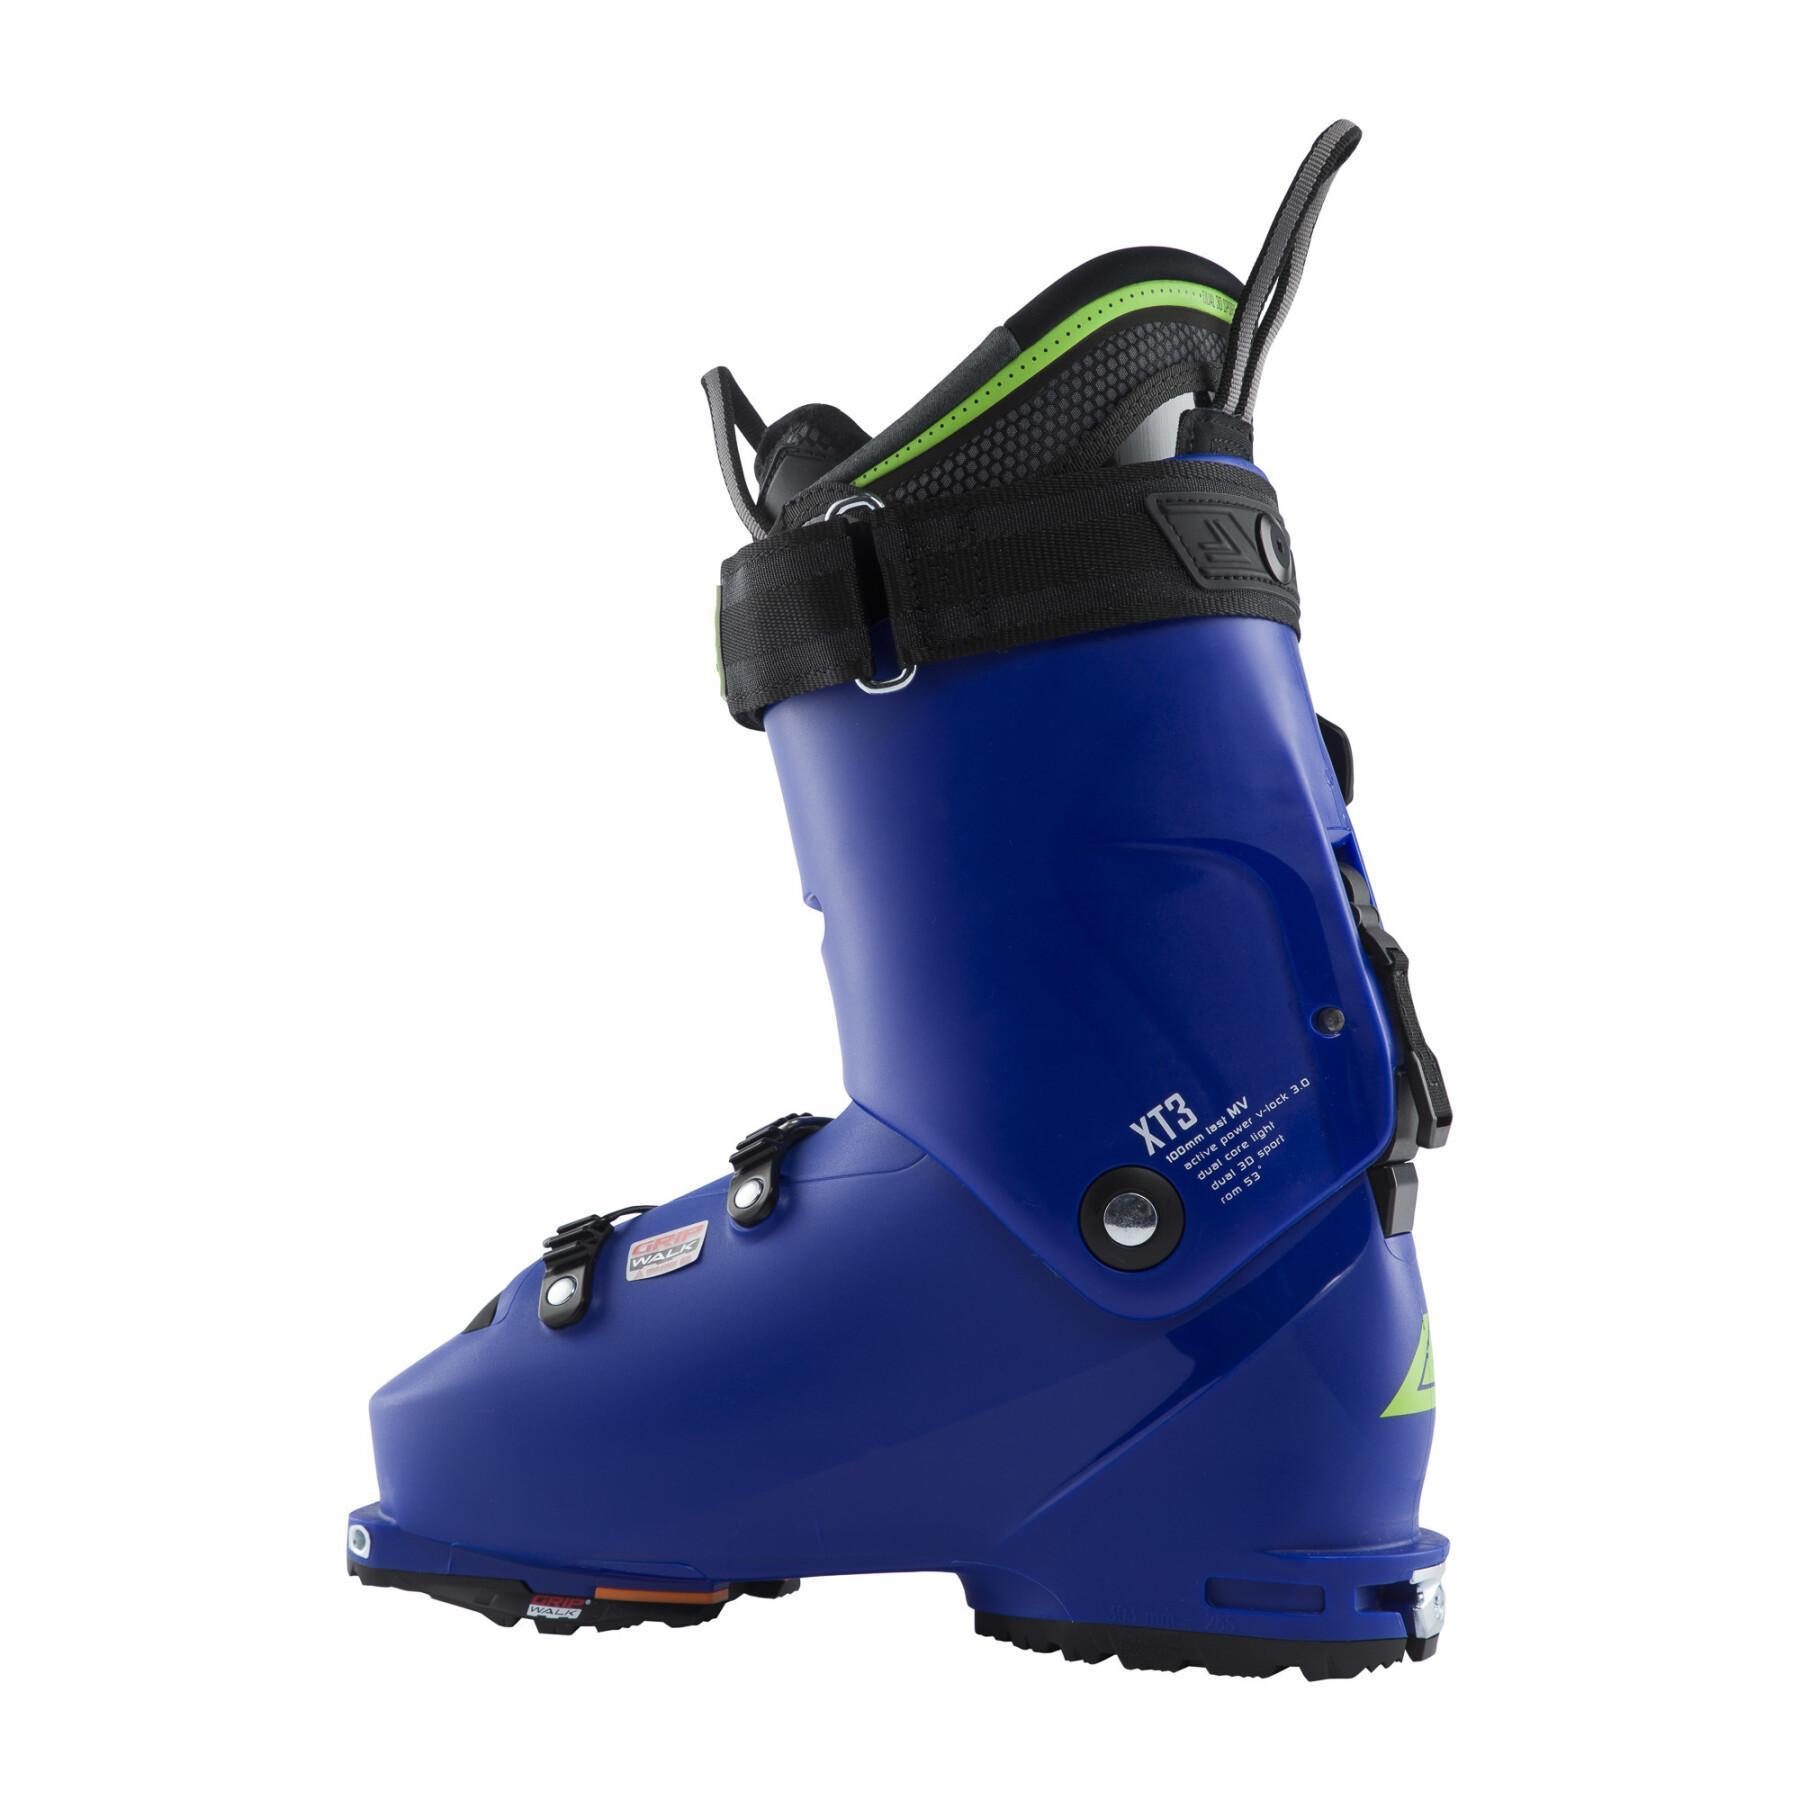 Ski boots Lange XT3 100 MV GW